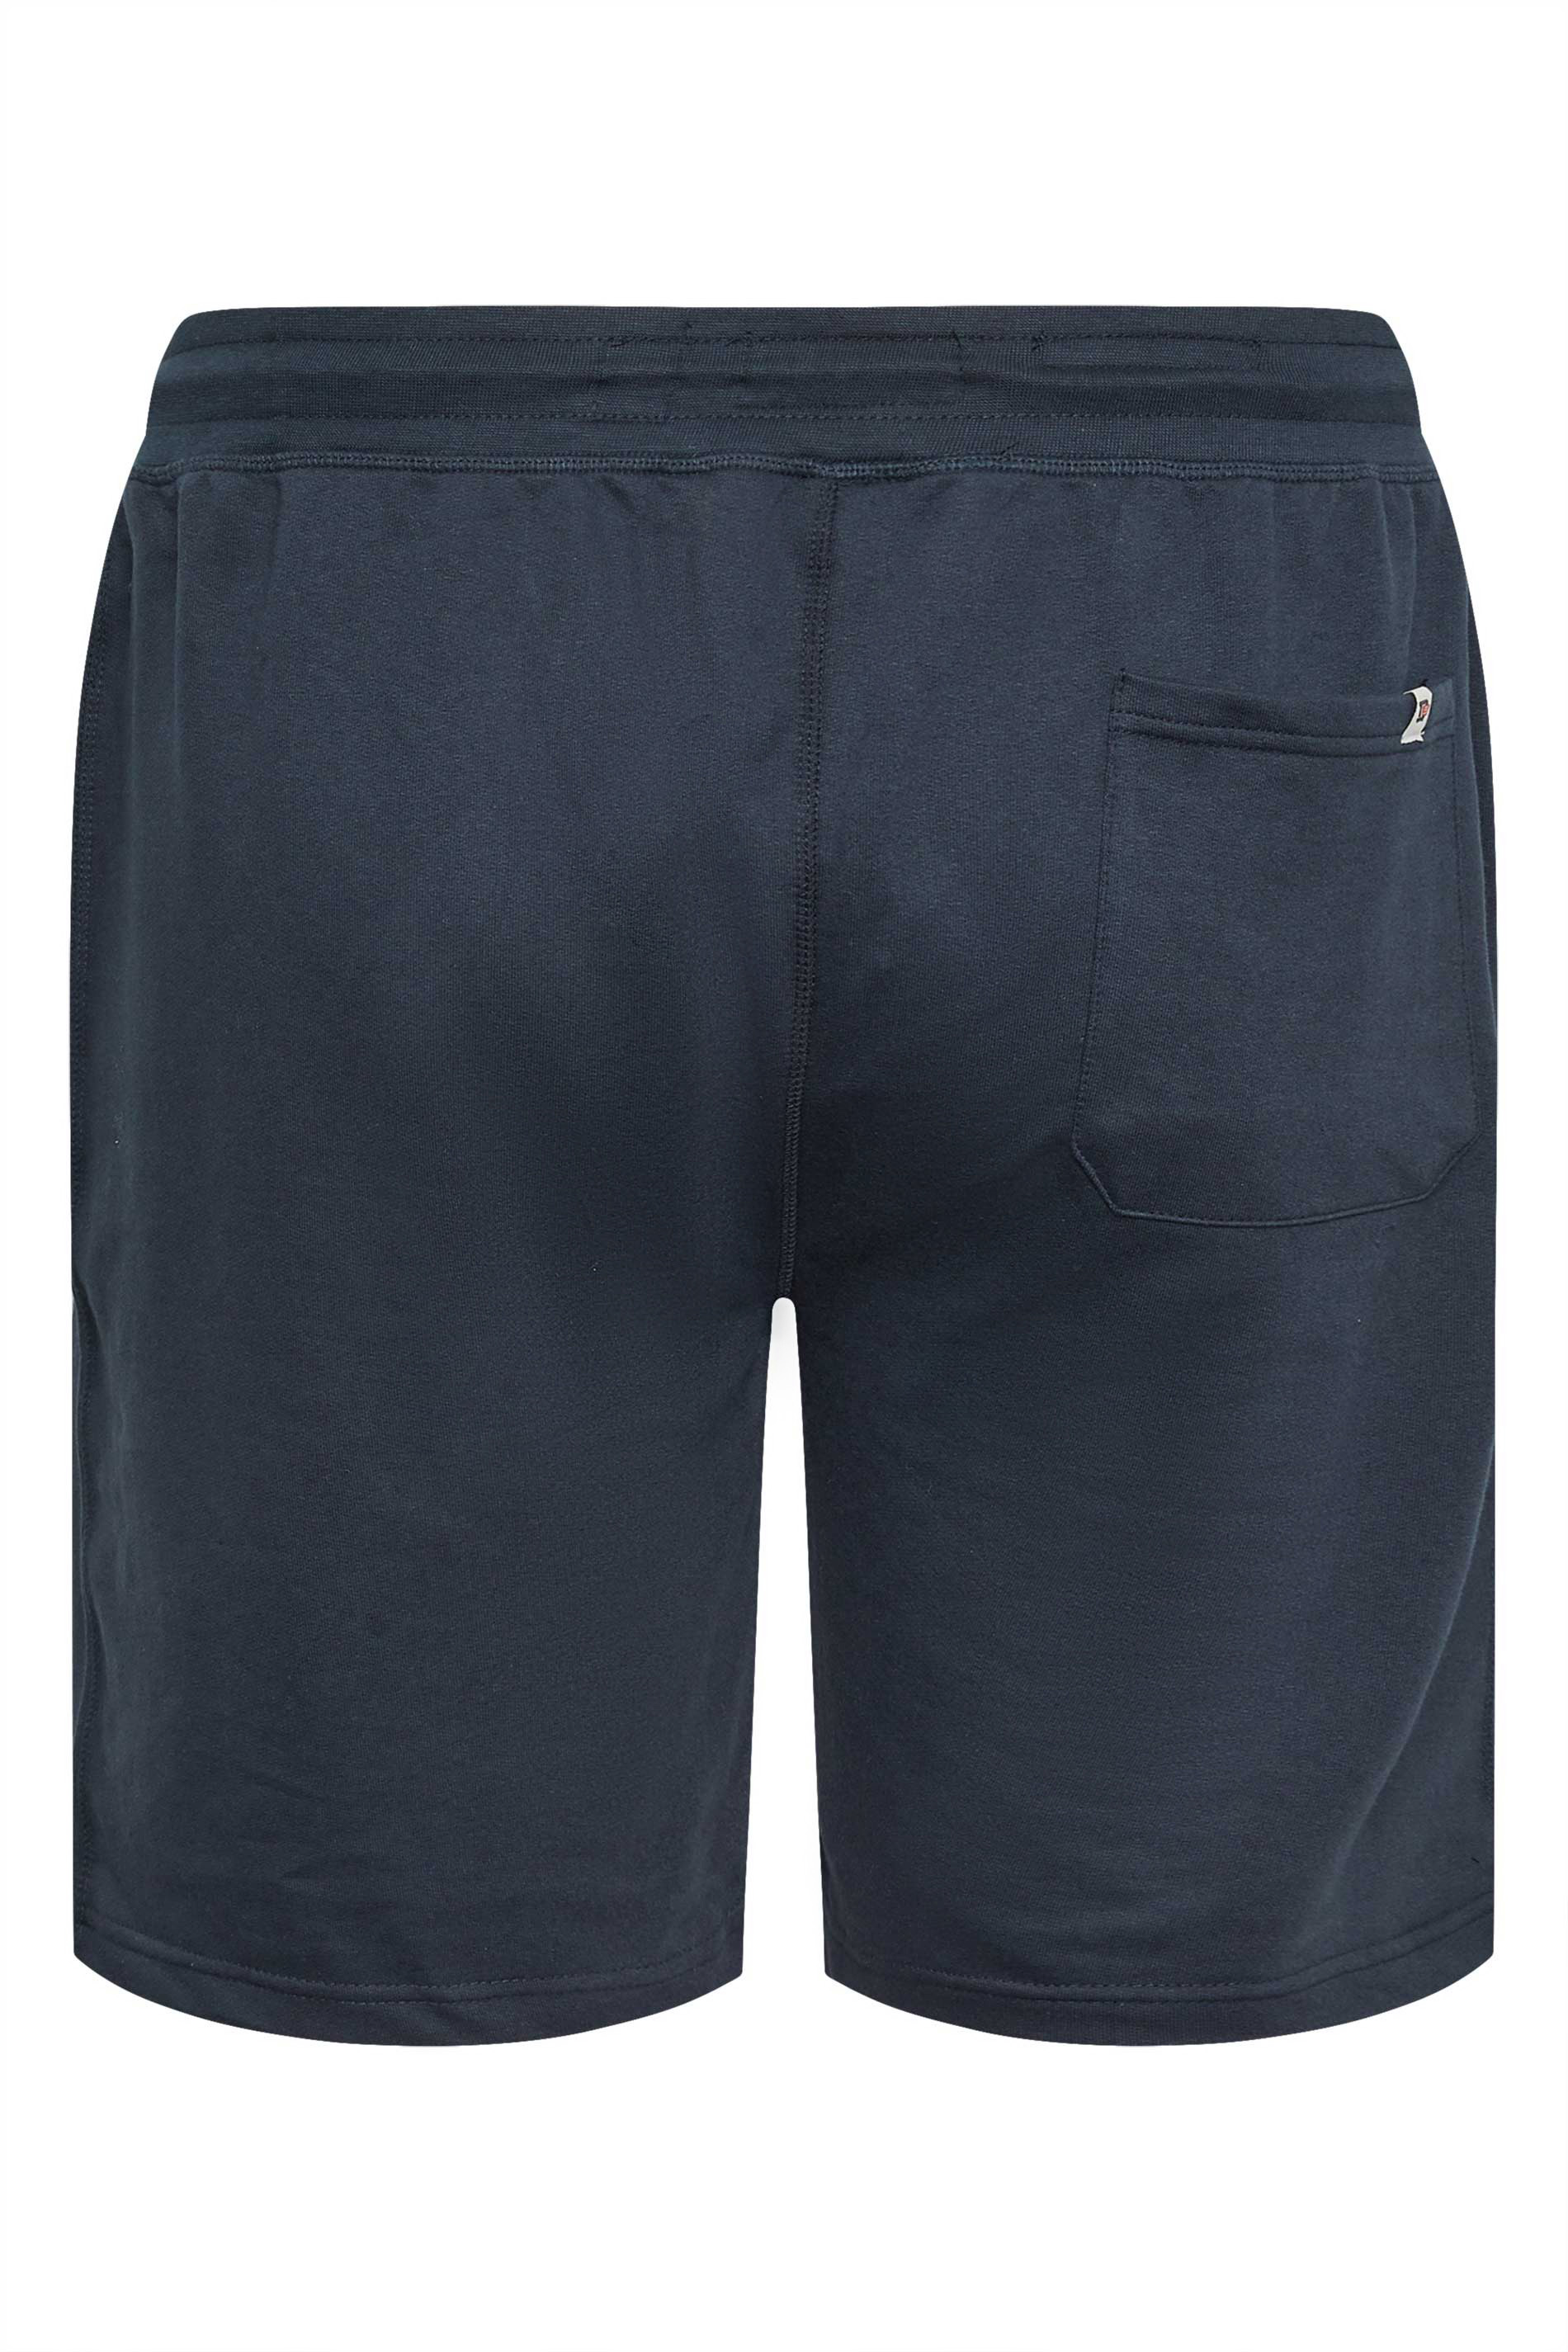 D555 Big & Tall Navy Blue Shorts | BadRhino